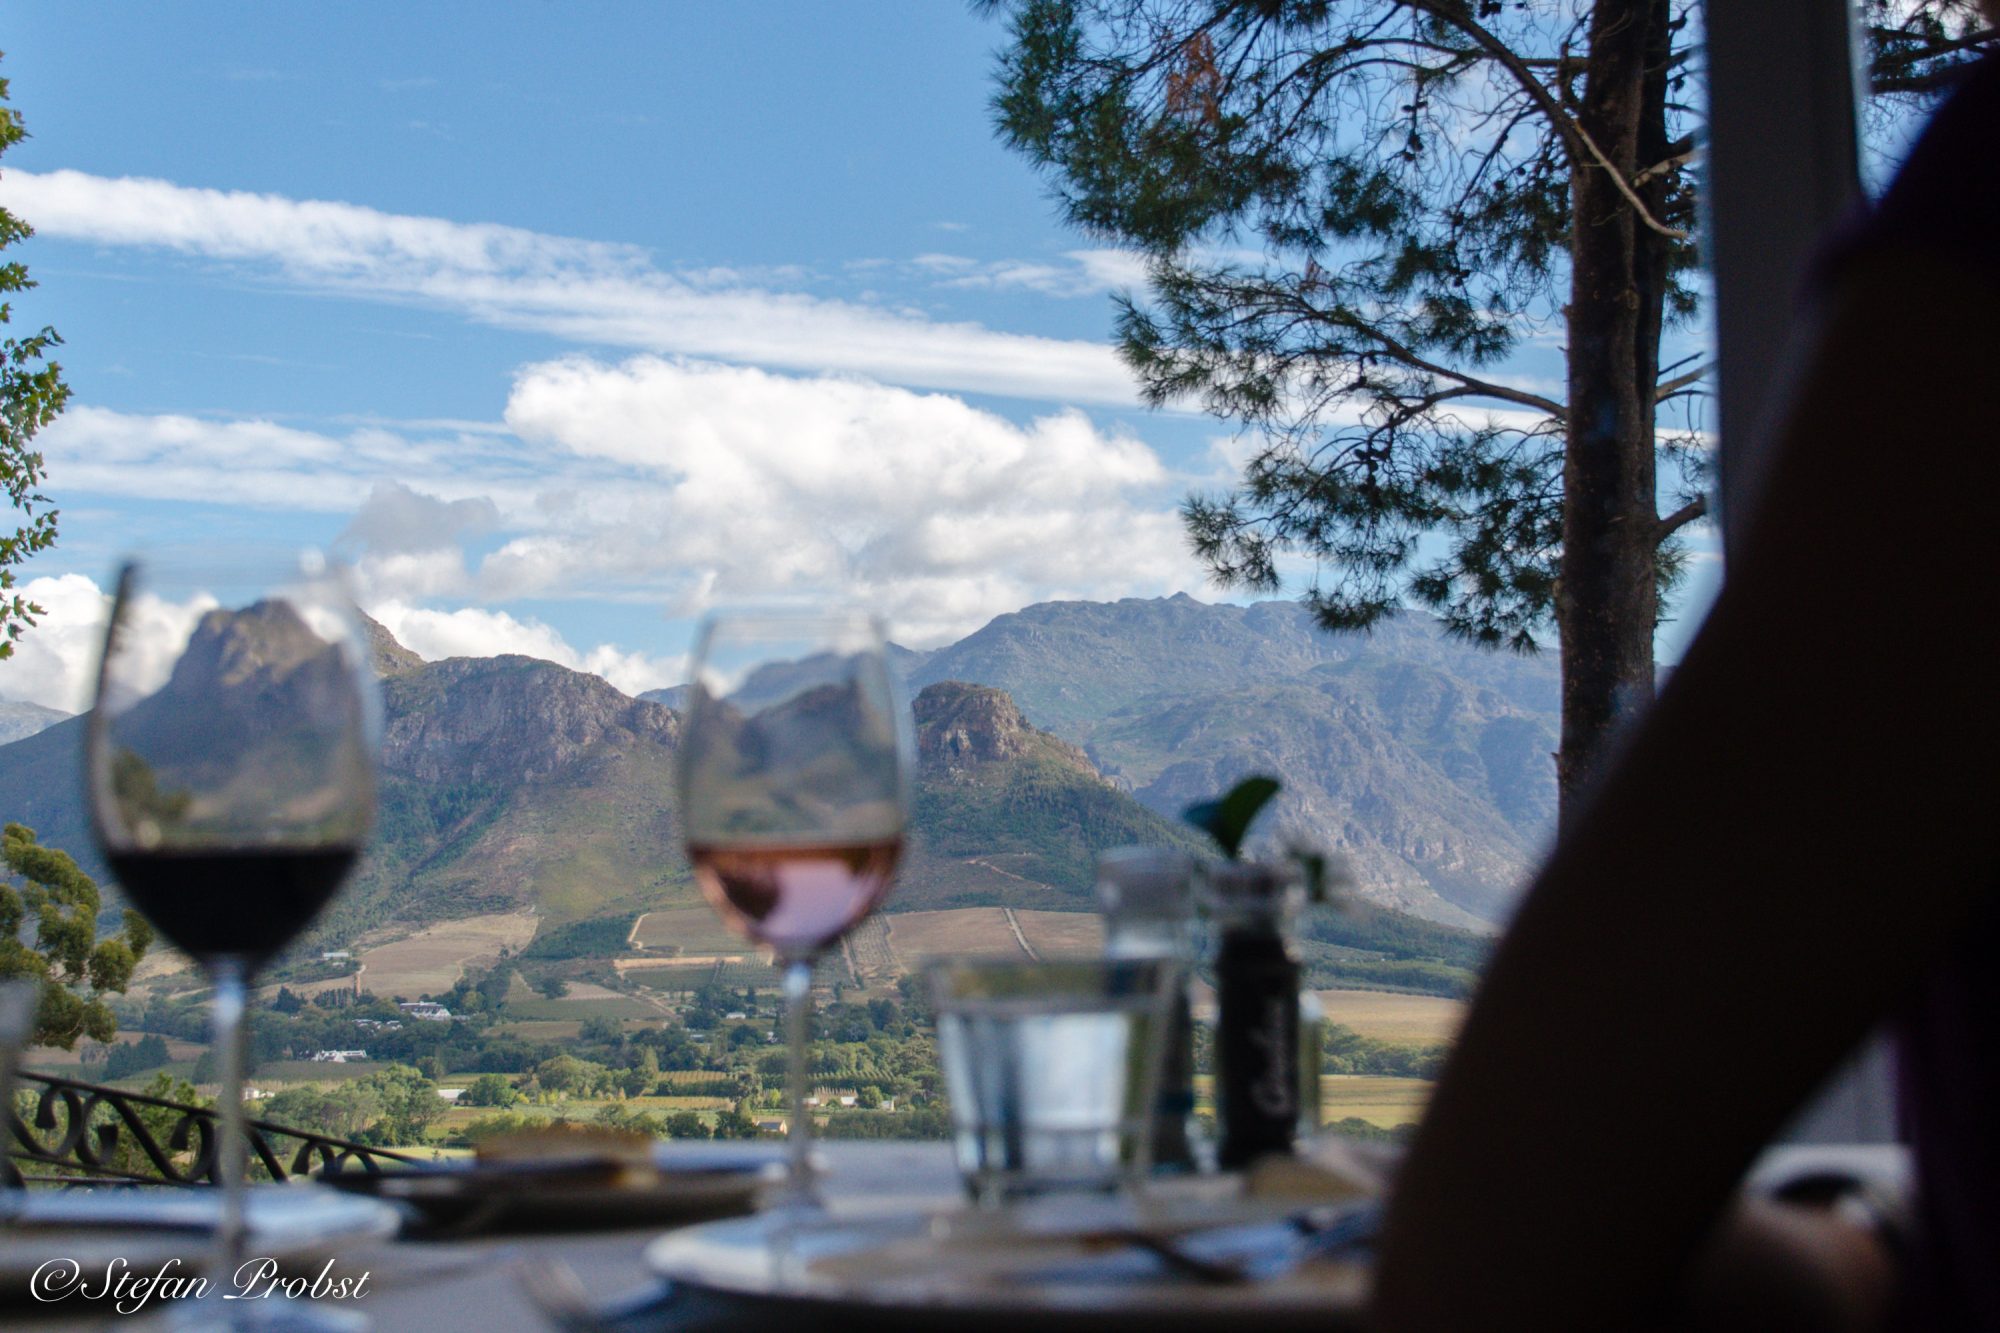 Südafrikas Gardenroute - Blick aus dem Restaurant La Petite Ferme auf die Berge der kleinen Karoo